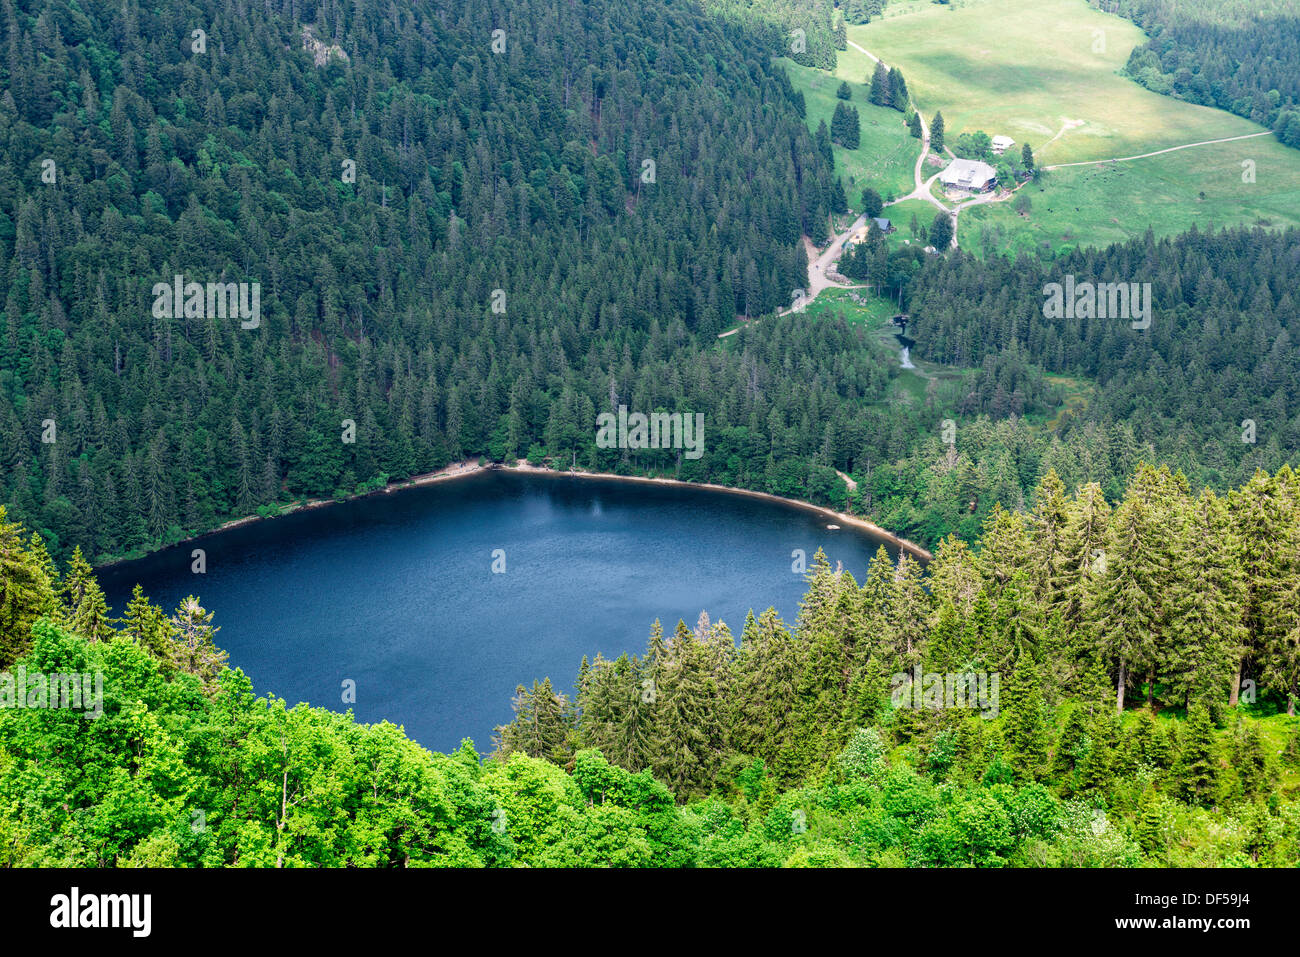 Lake (Feldsee) on the Feldberg, on the highest mountain in Baden-Württemberg, Germany Stock Photo